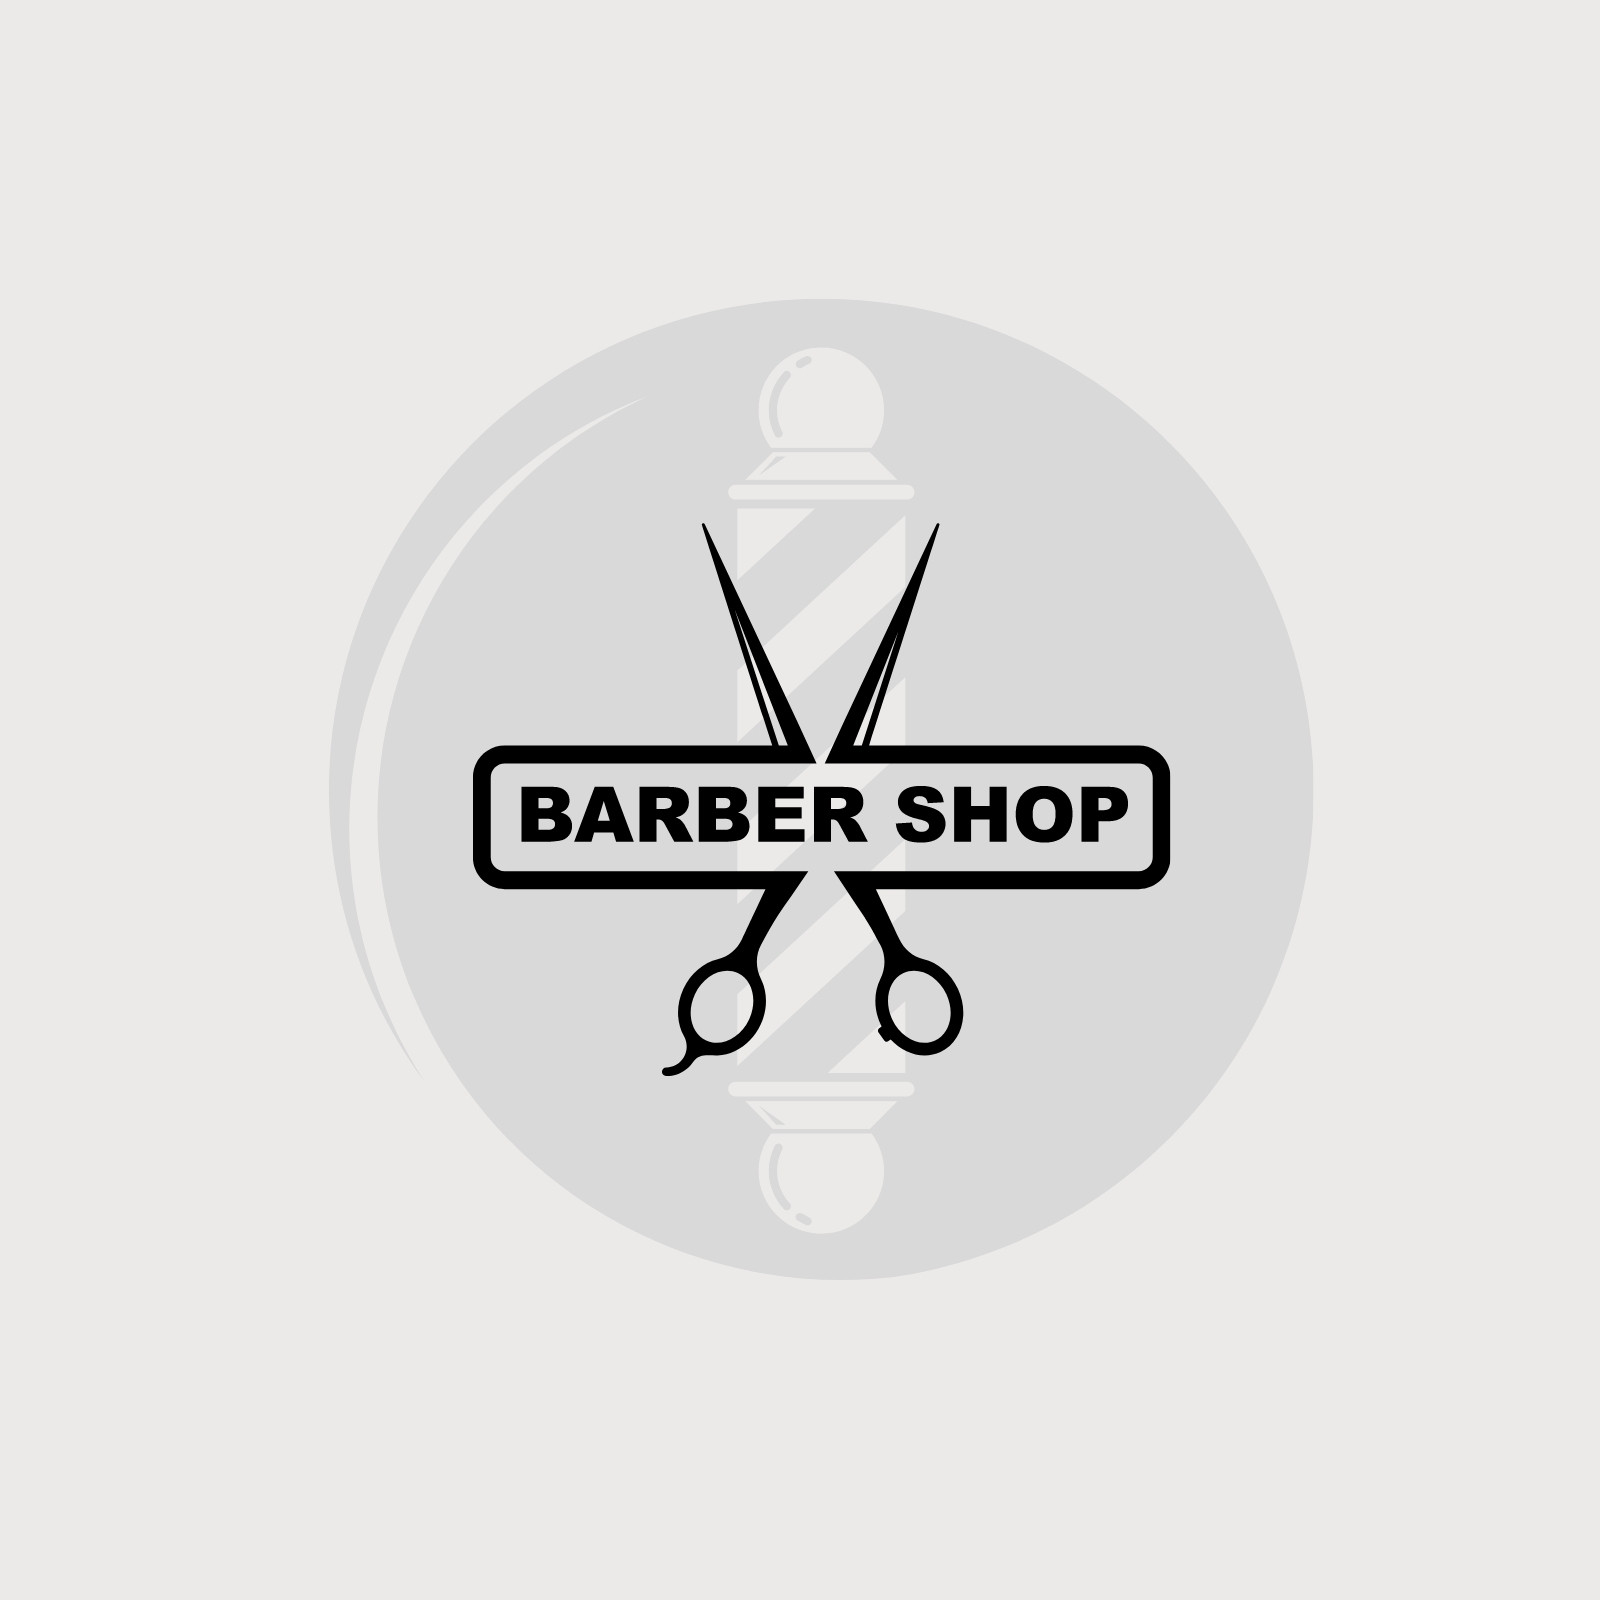 Barber Shop Logo Design - Apps on Google Play